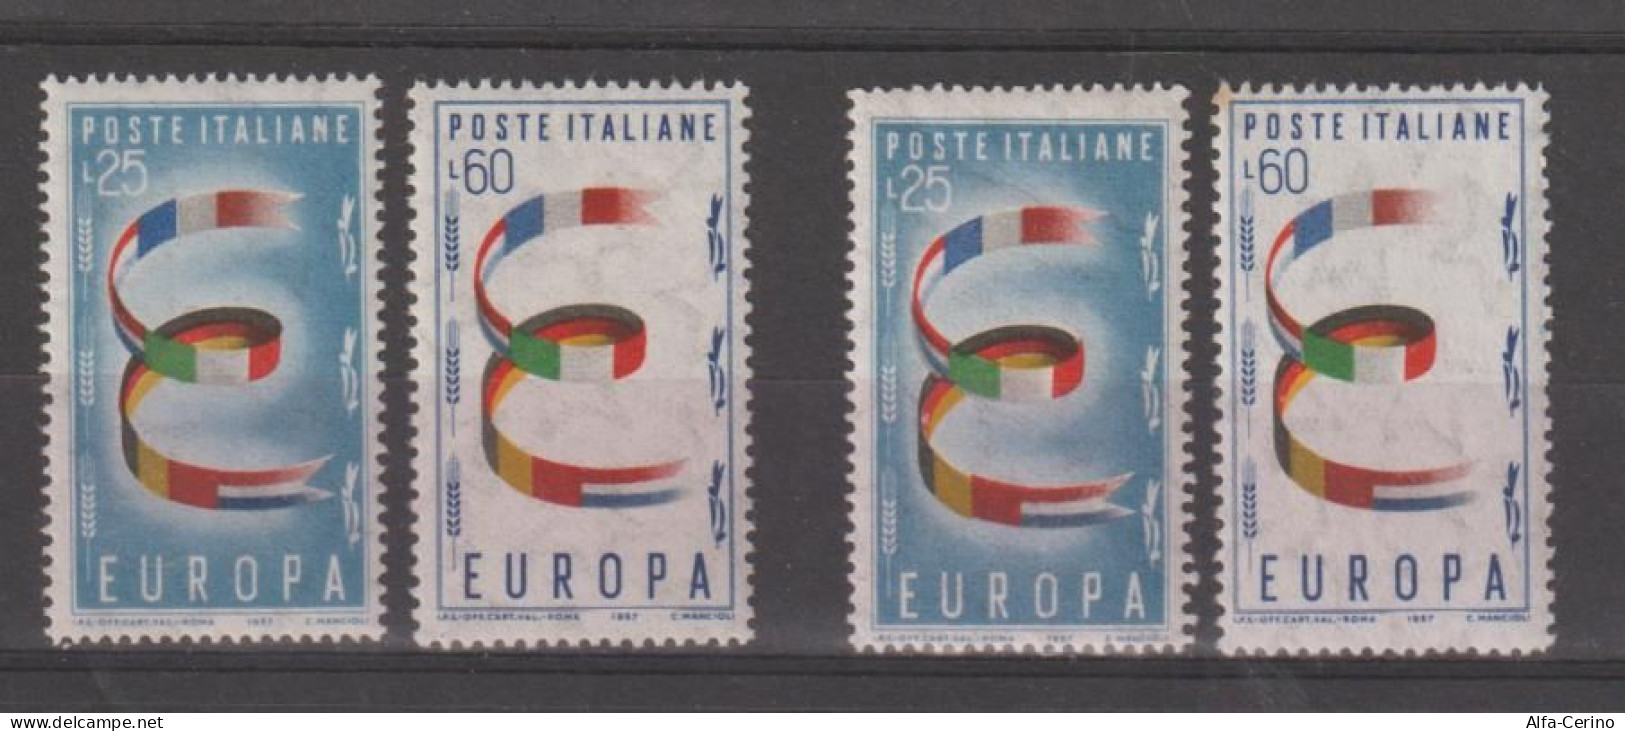 REPUBBLICA:  1957  EUROPA  CEPT  -  S. CPL. 2  VAL. N. -  RIPETUTA  2  VOLTE  -  SASS. 817/18 - 1957